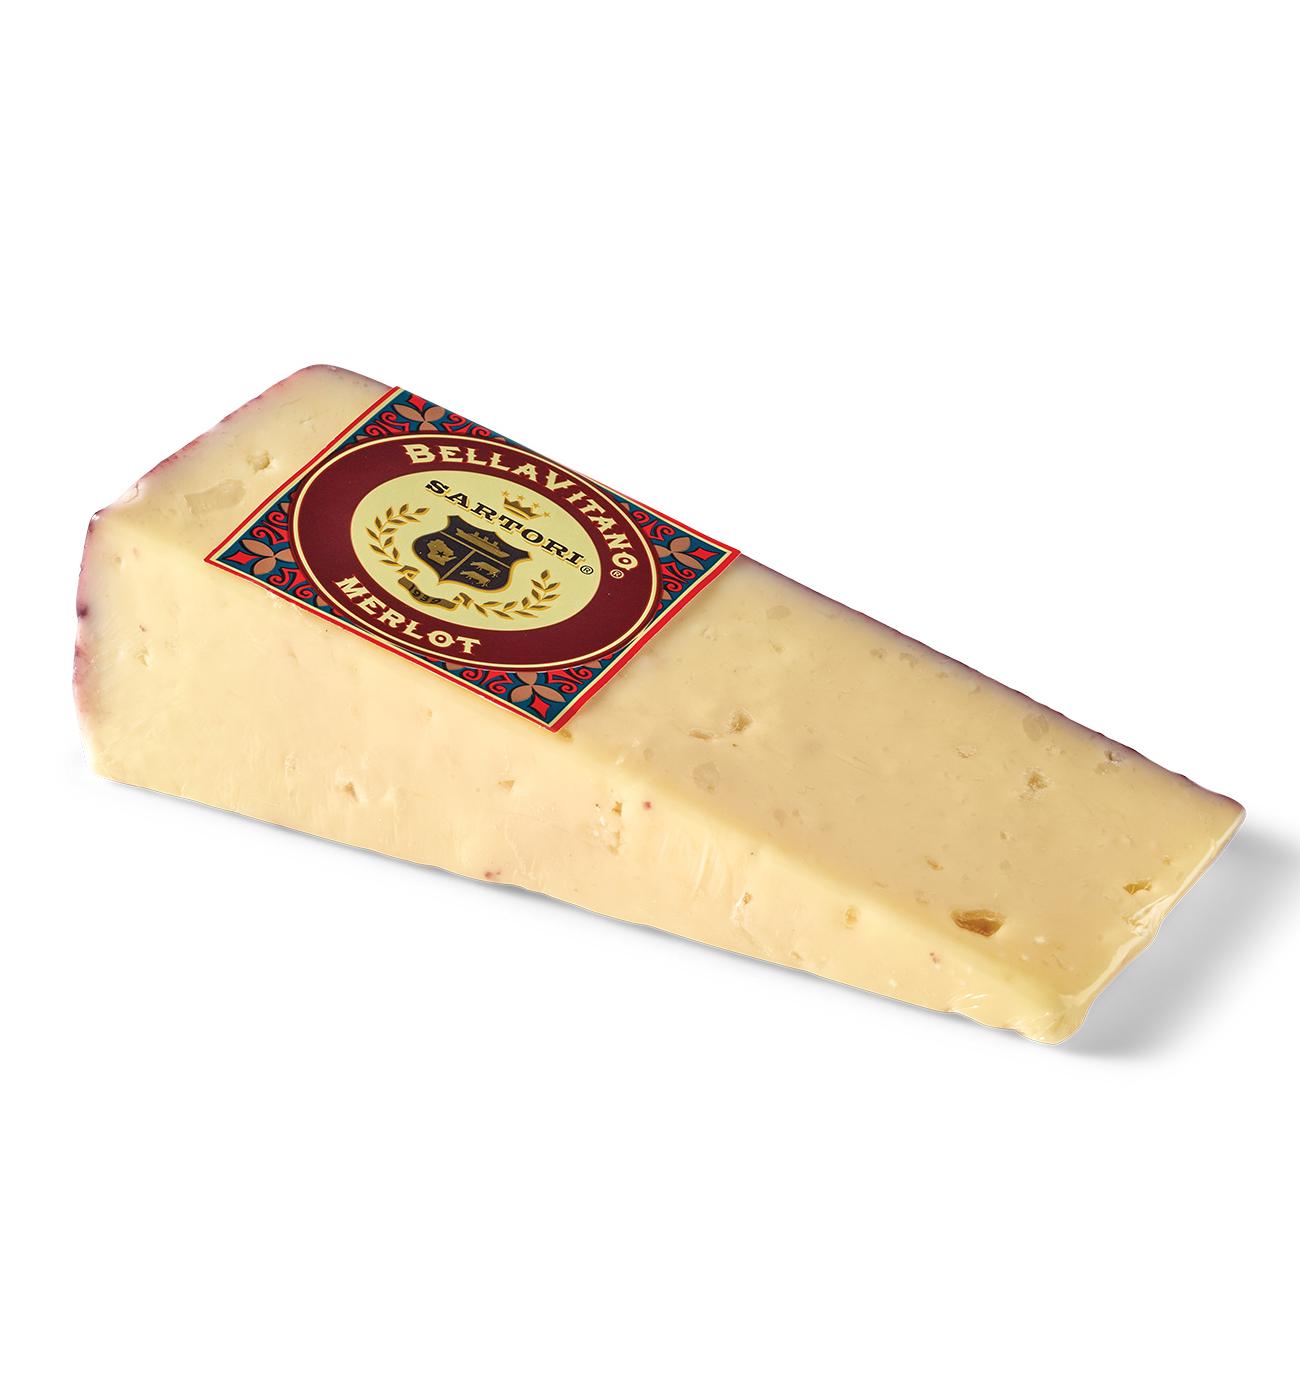 Sartori Merlot BellaVitano Cheese Wedge; image 3 of 3